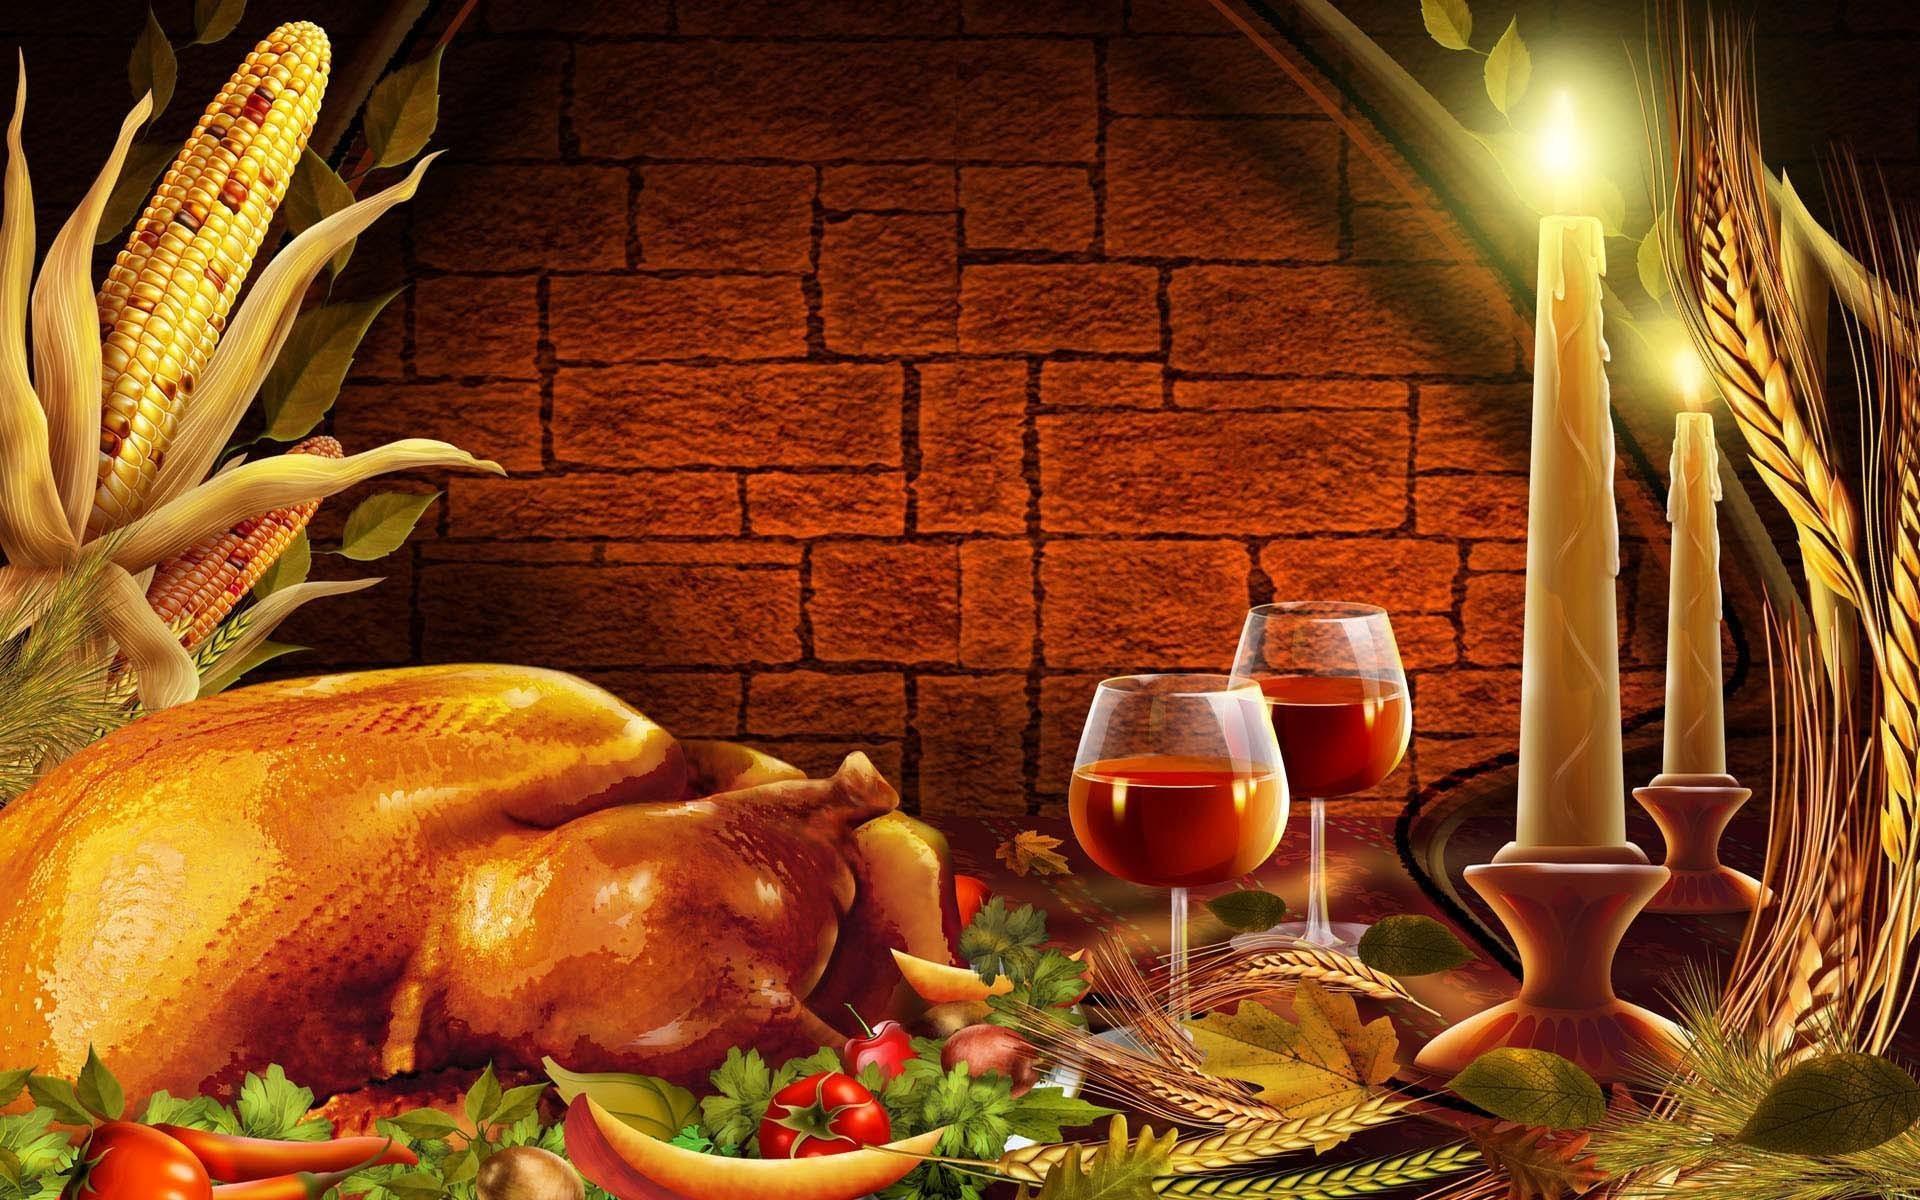 3D Thanksgiving Photo Desktop Wallpaper High Definition